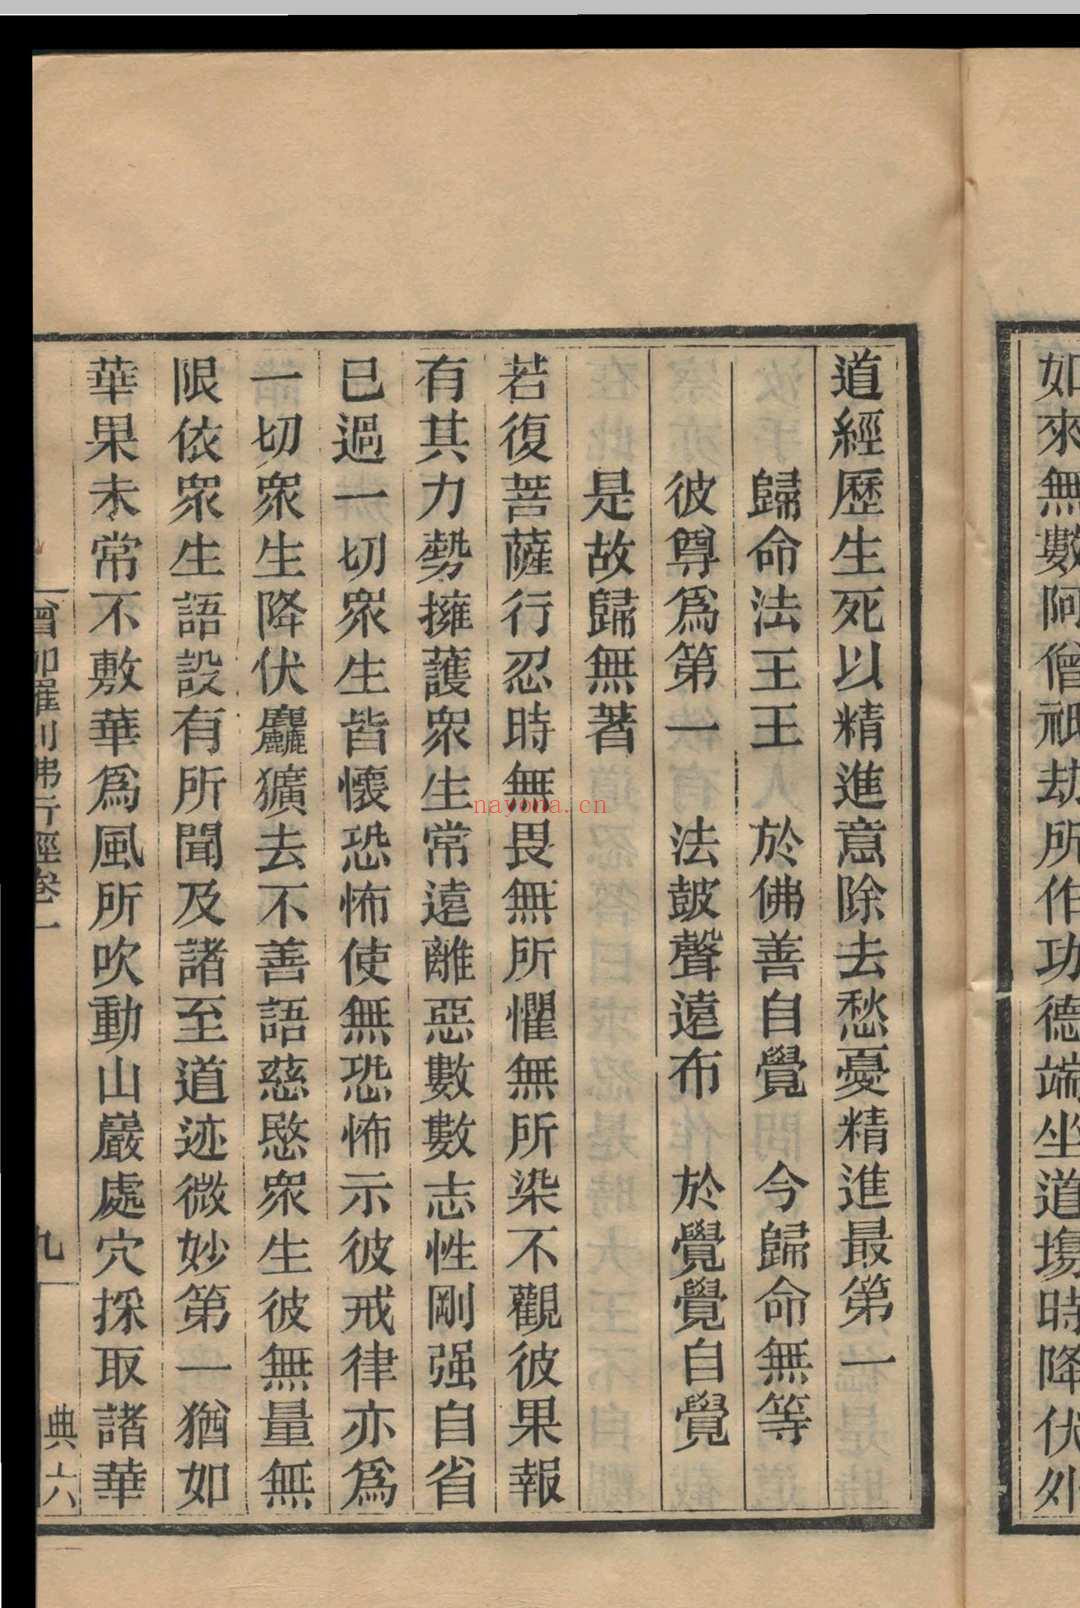 僧伽所集佛行经  5卷  僧伽跋澄译 1920